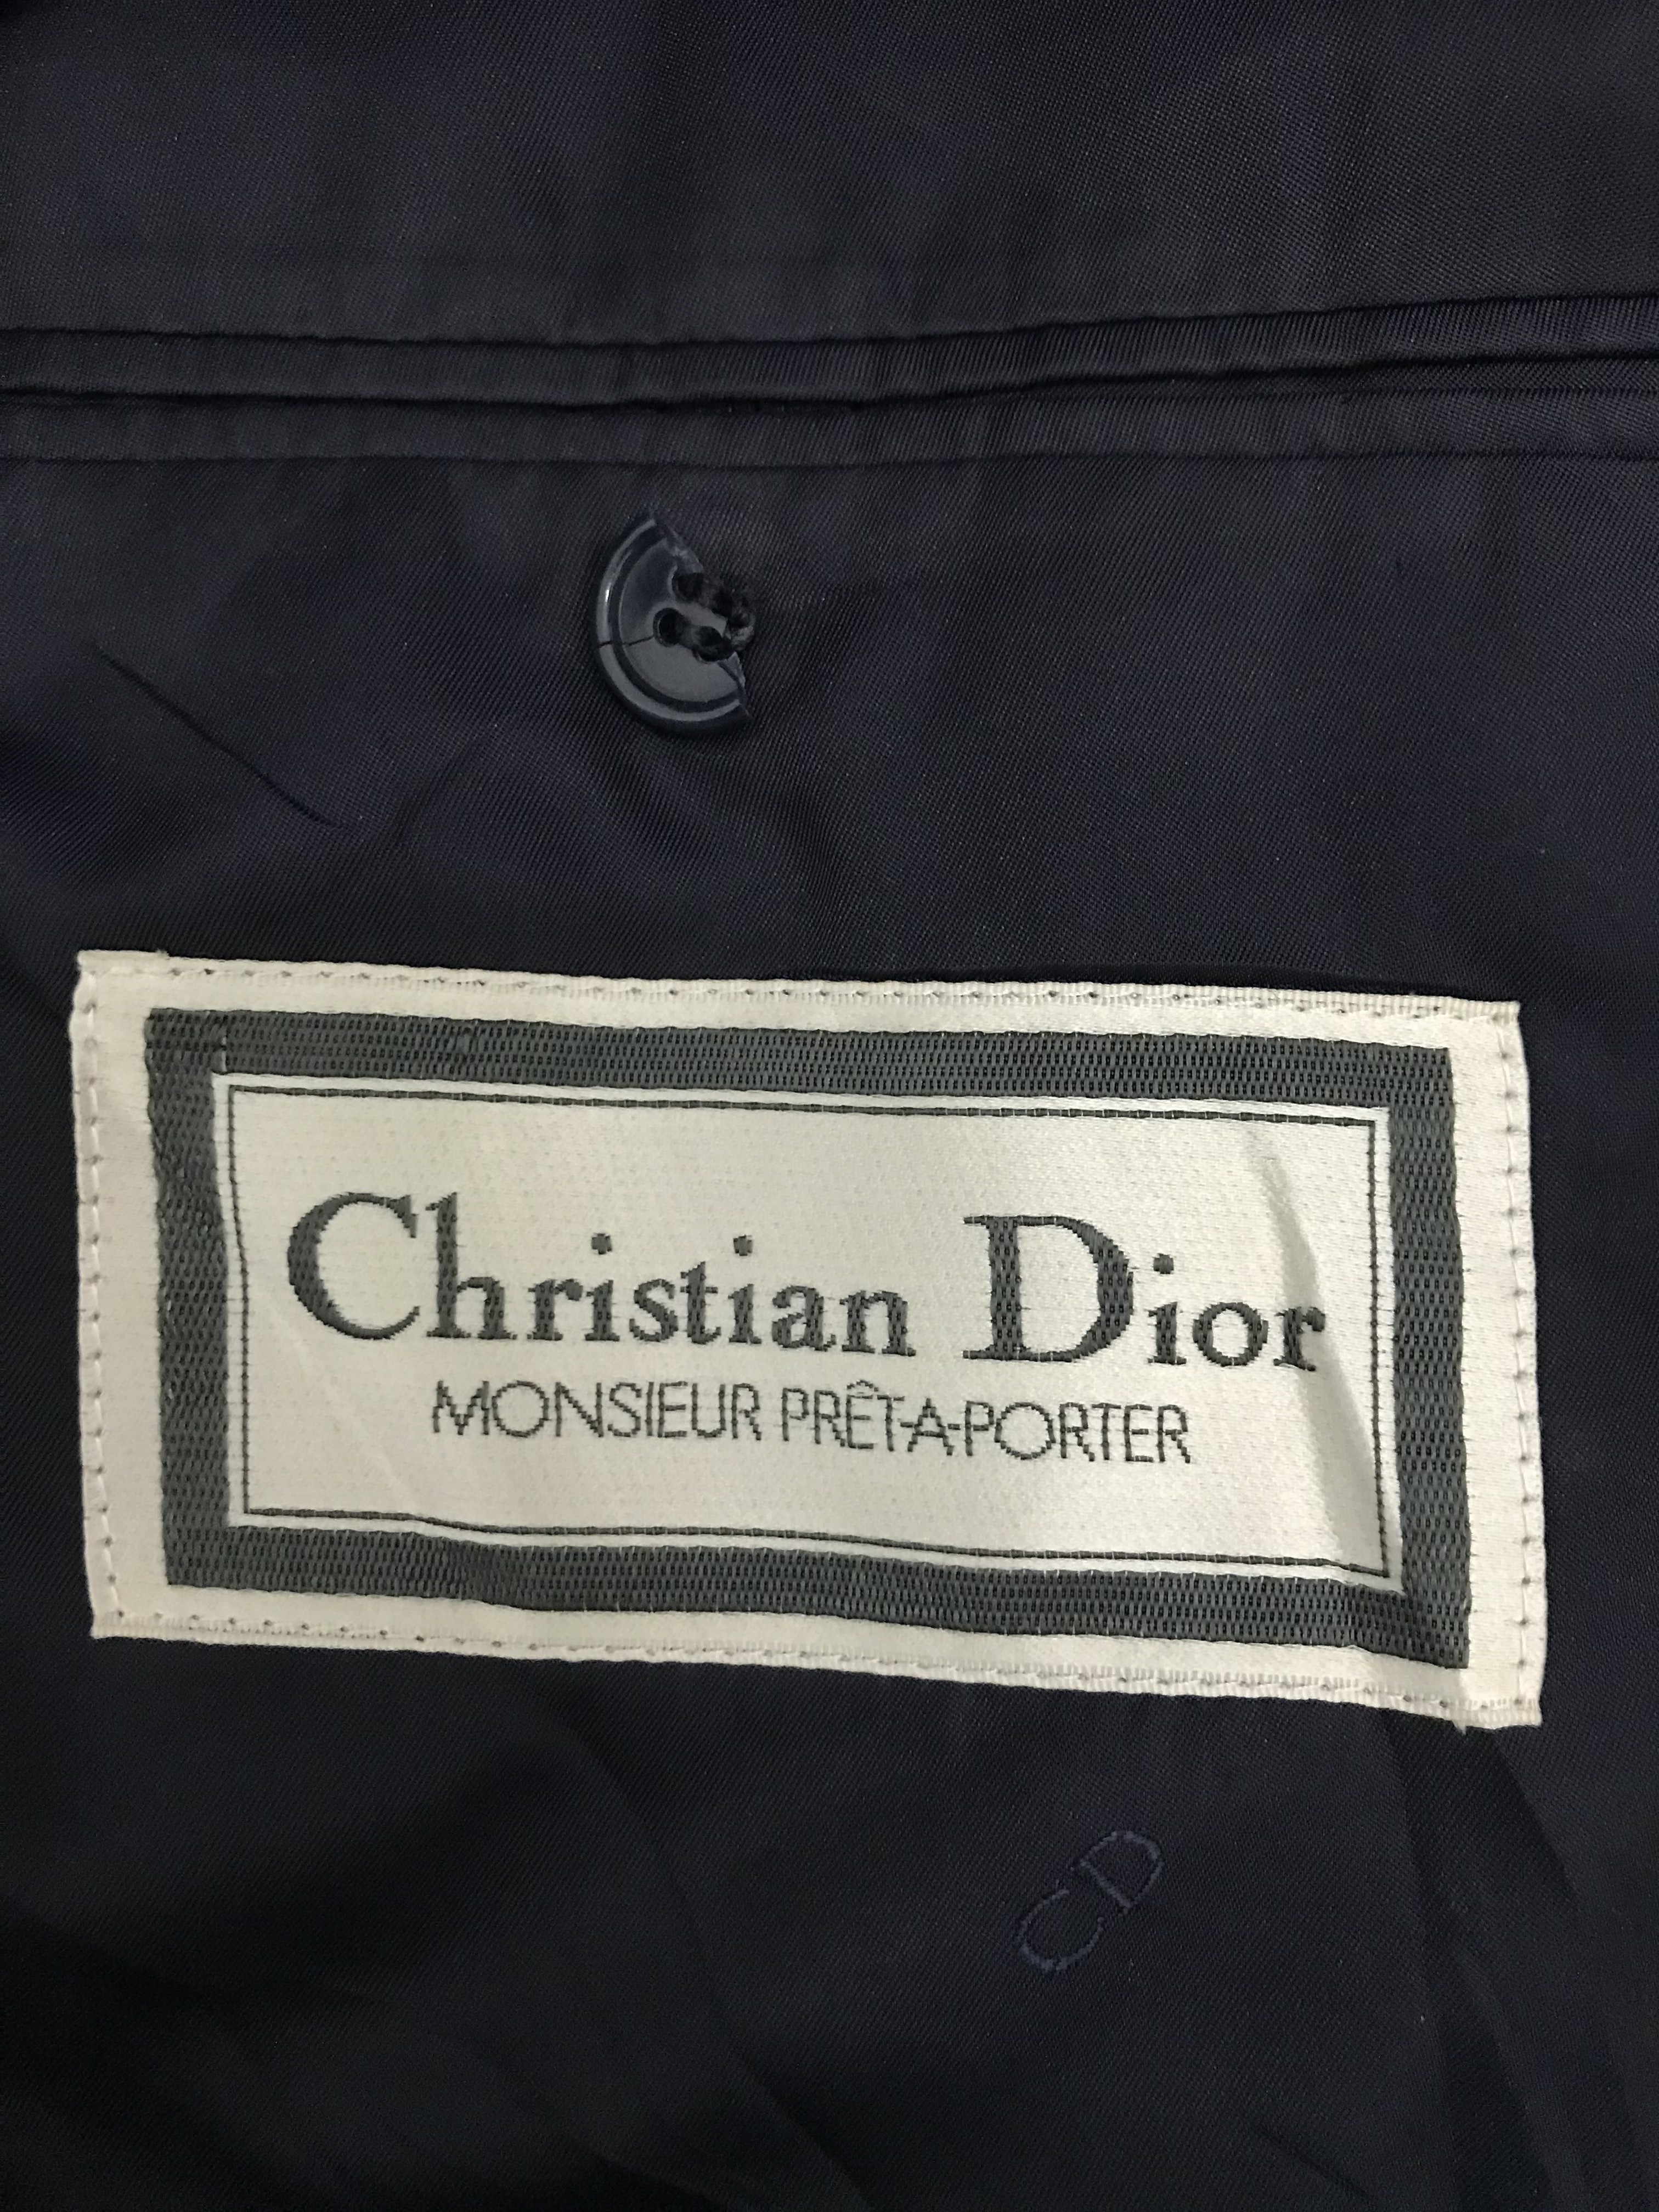 Christian Dior Monsieur - Christian Dior Monsieur Pret-A-Porter - 6